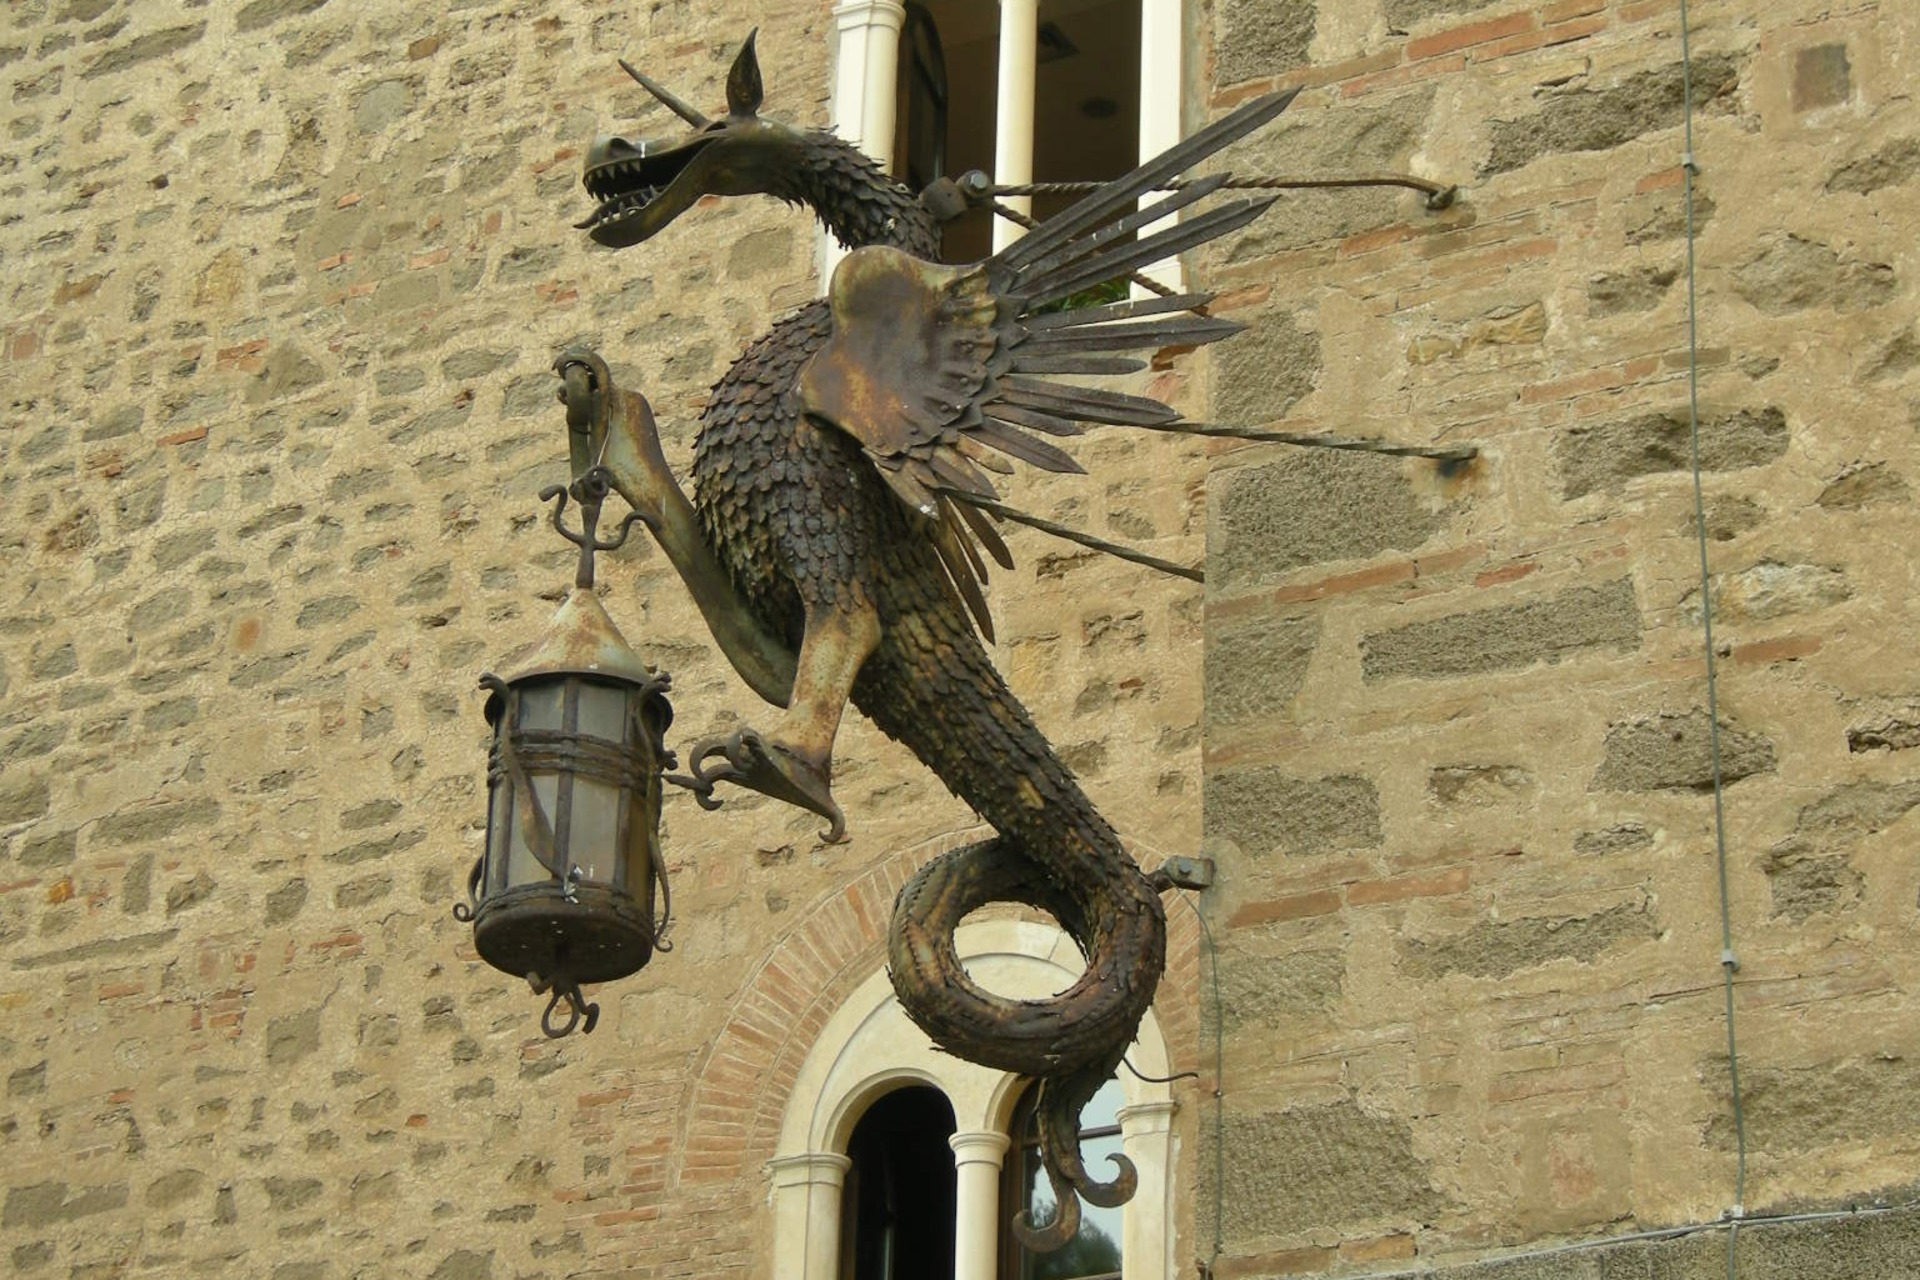 The torch-bearing dragon on the walls of Castello Pasquini in Castiglioncello di Rosignano Marittimo